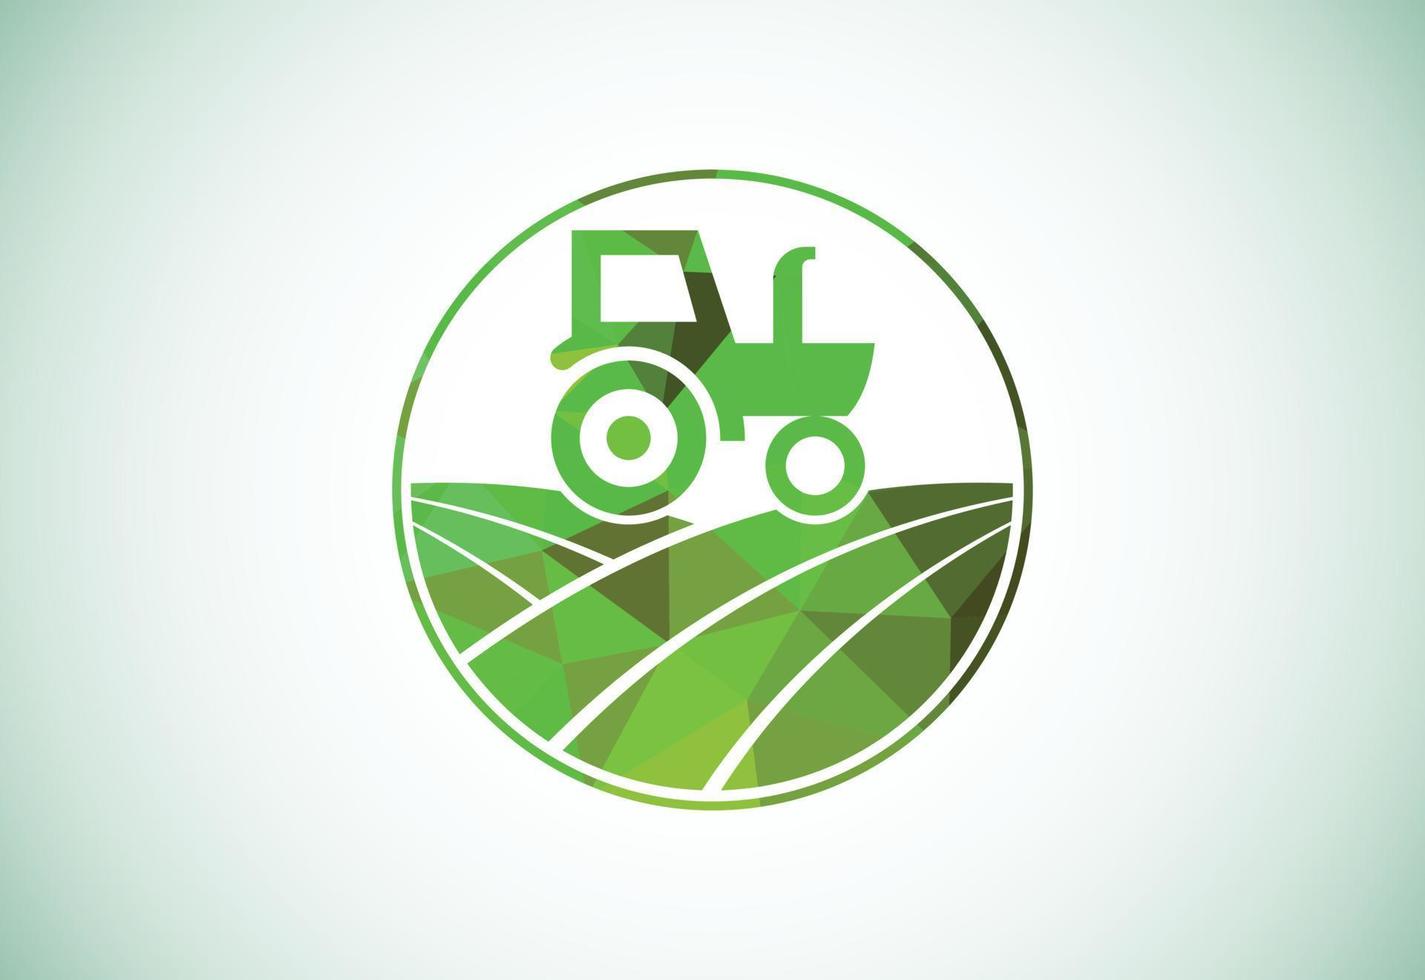 design de logotipo estilo baixo poli de trator ou fazenda, adequado para qualquer negócio relacionado às indústrias agrícolas. vetor